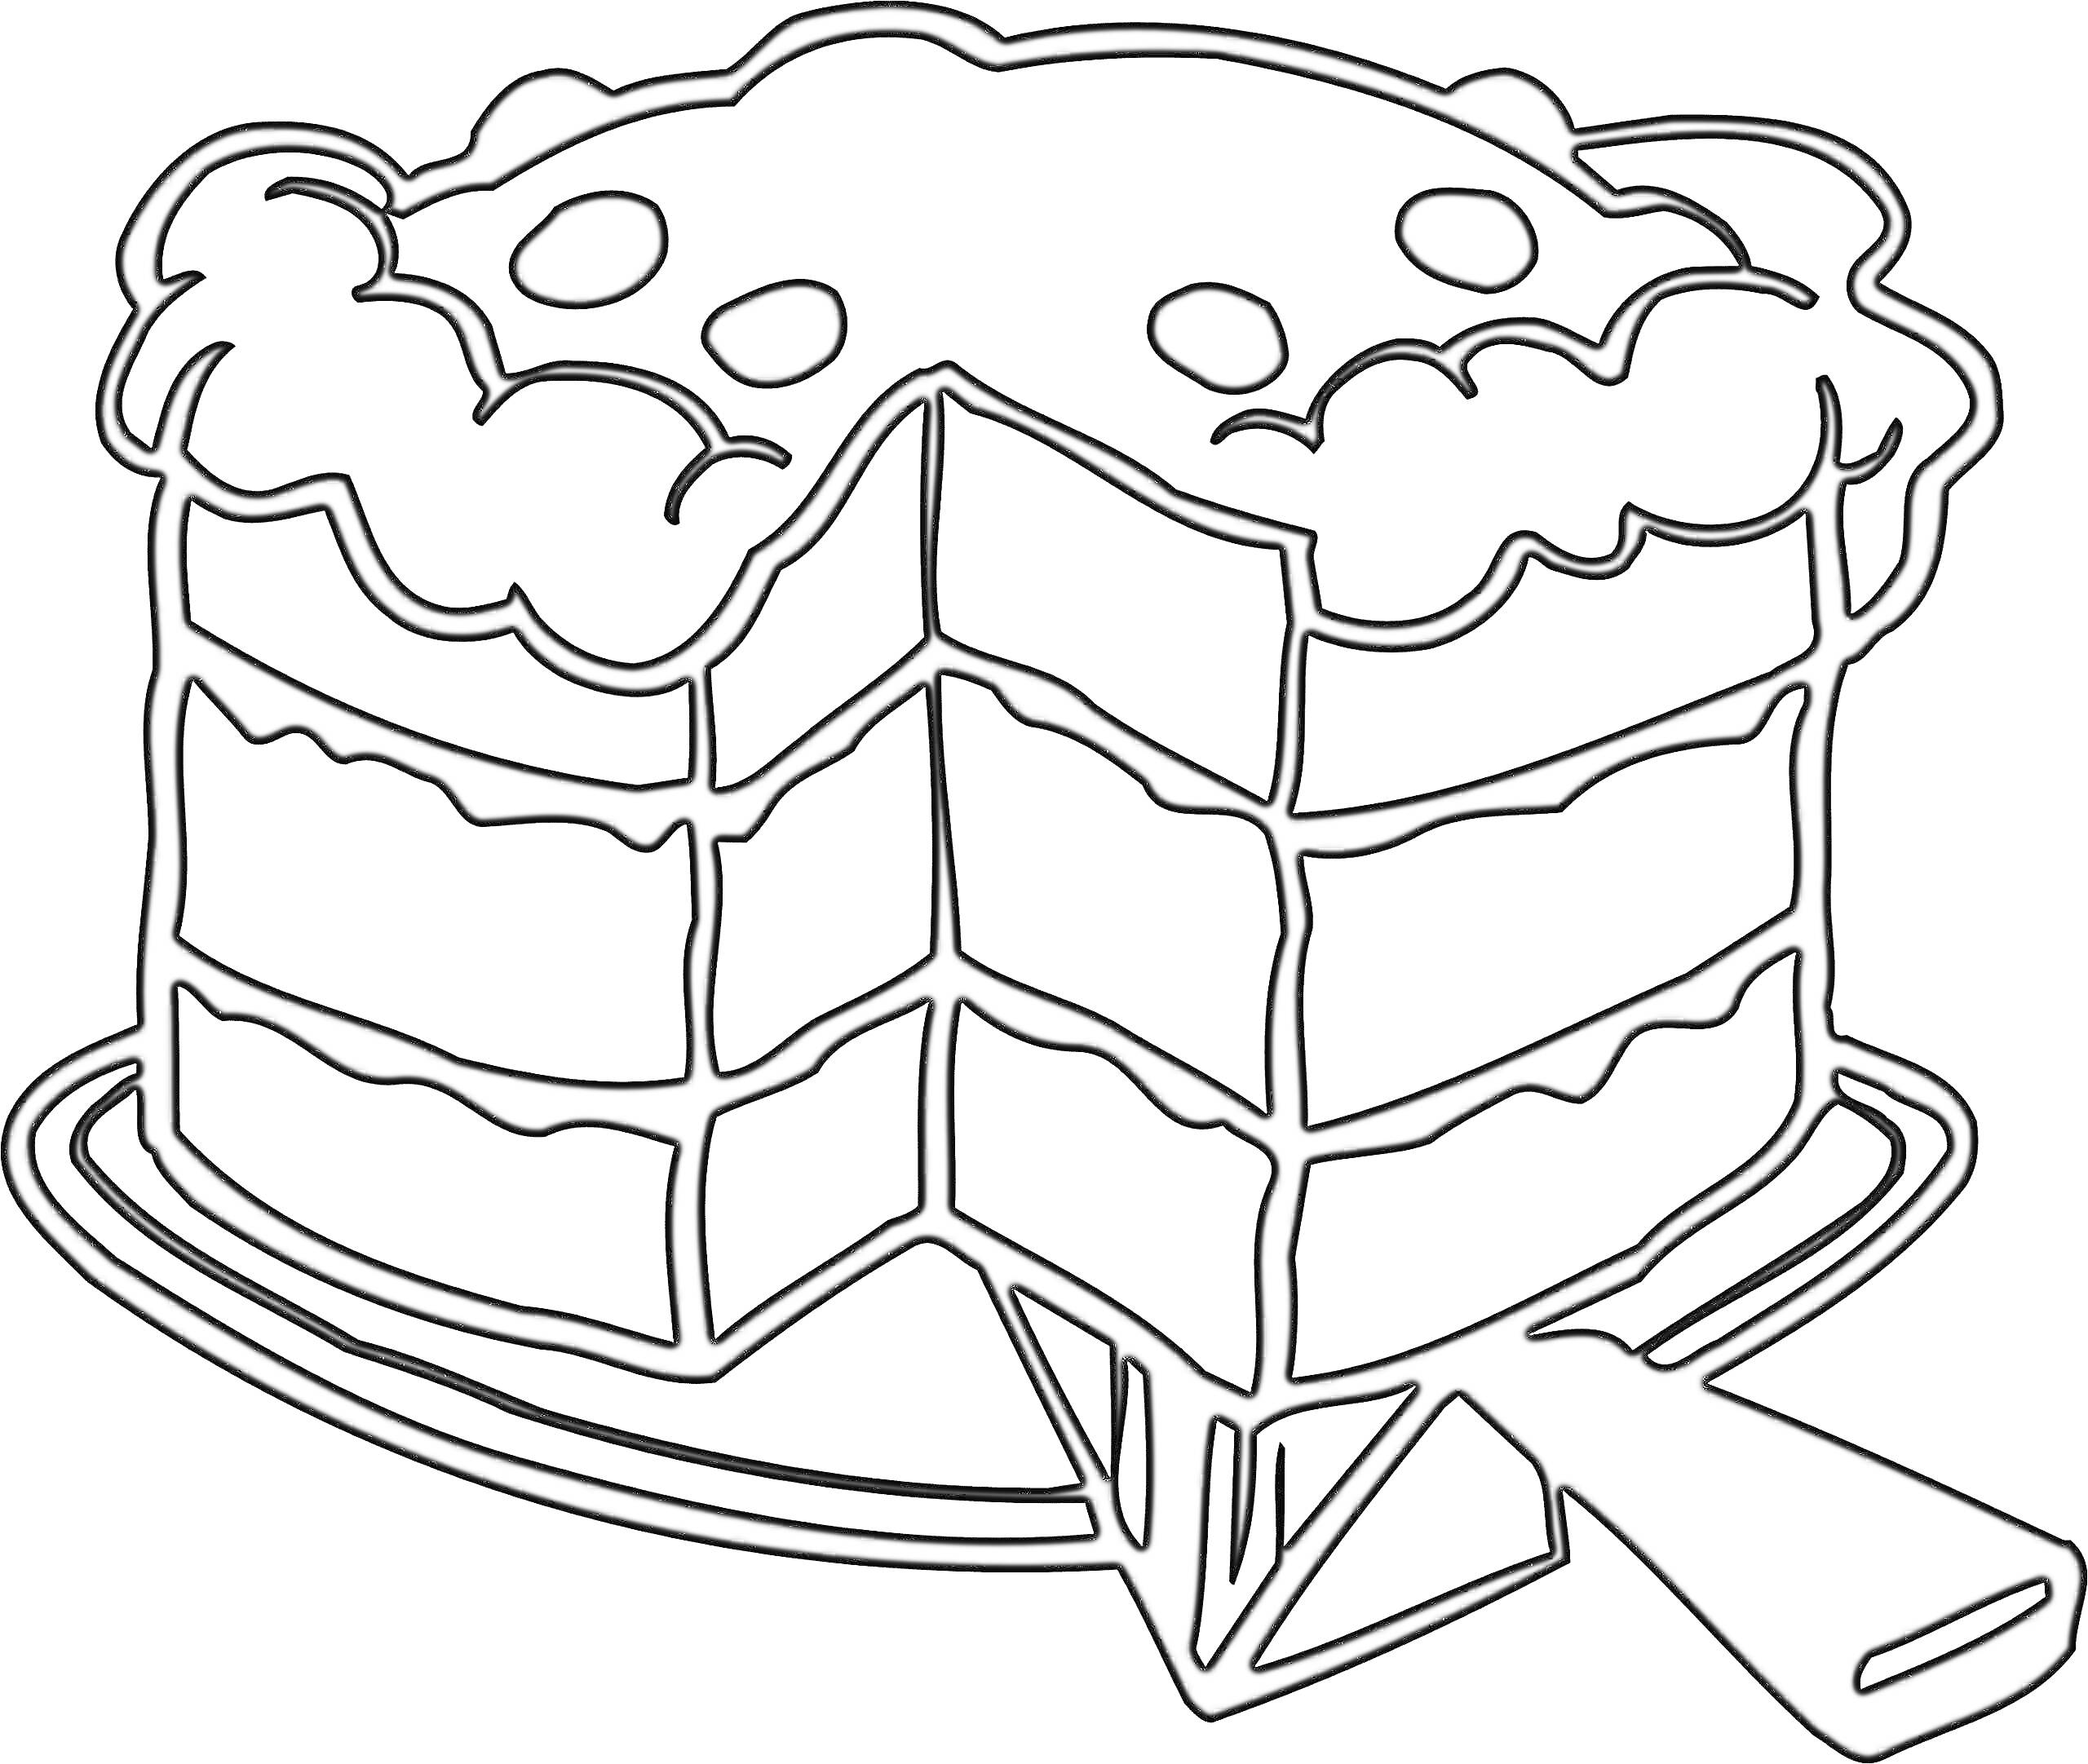 Раскраска Торт с кремом и ягодами на блюде с ножом